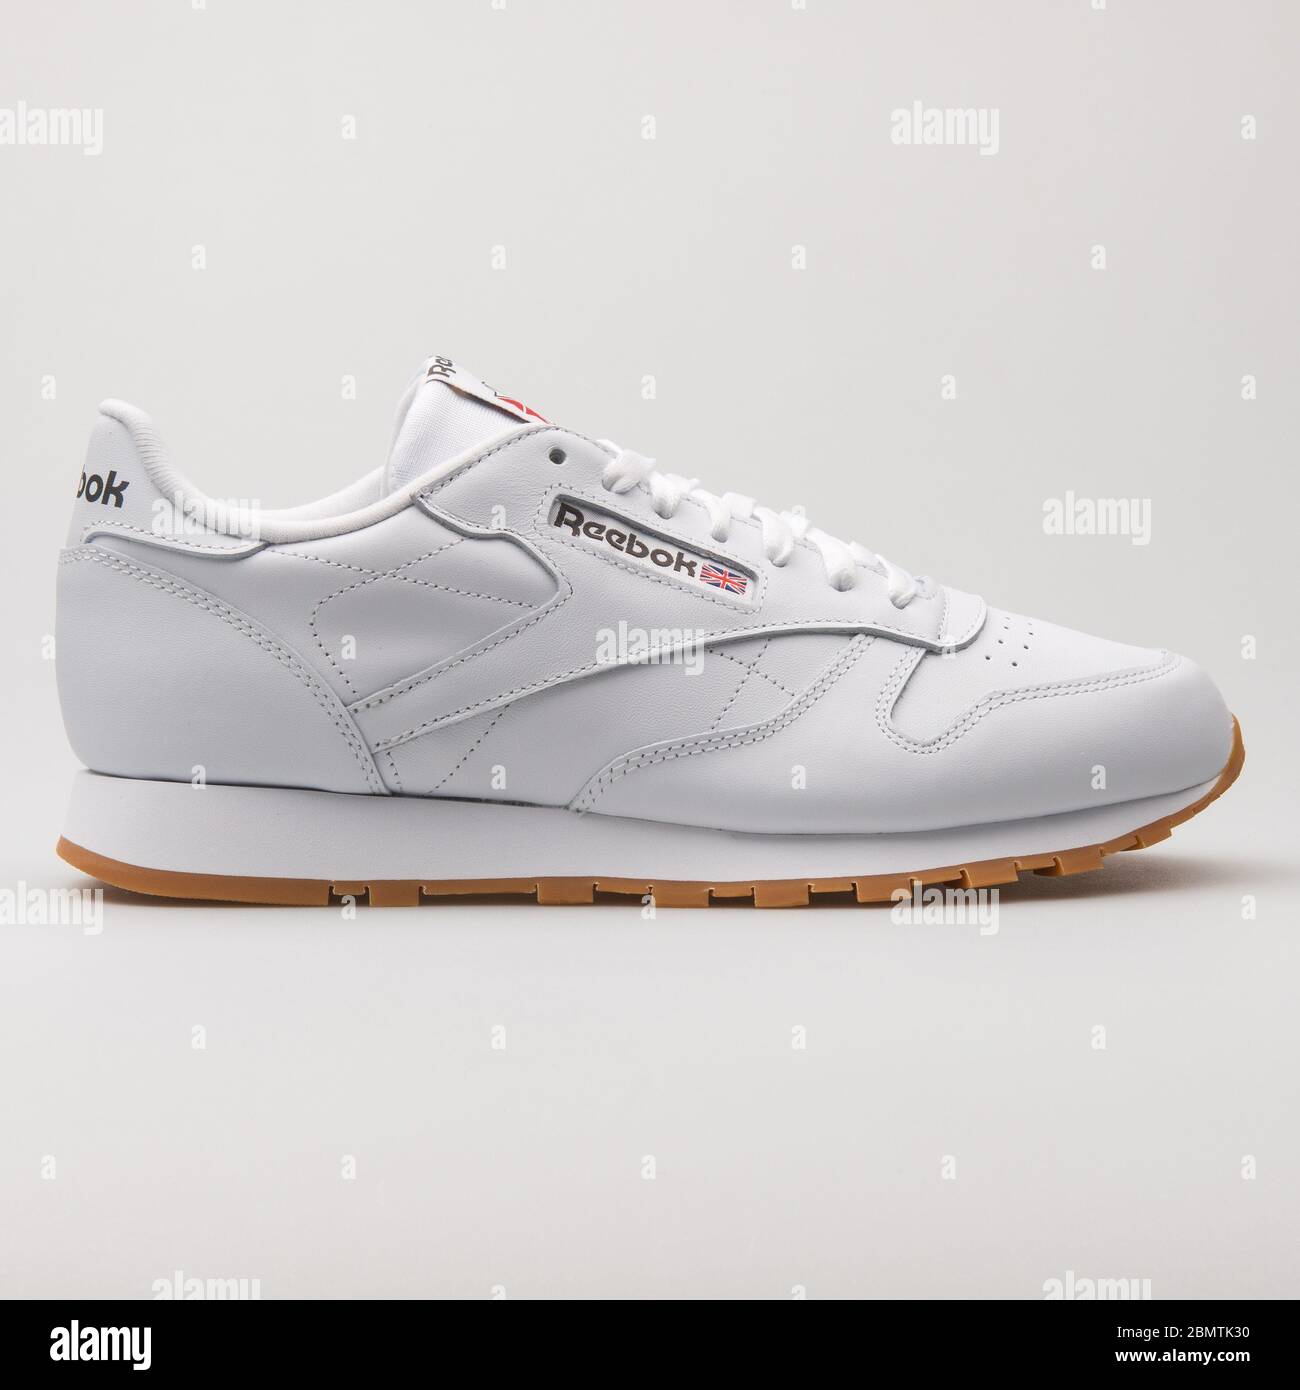 comida gritar Astrolabio VIENNA, AUSTRIA - FEBRUARY 19, 2018: Reebok Classic Leather white sneaker  on white background Stock Photo - Alamy